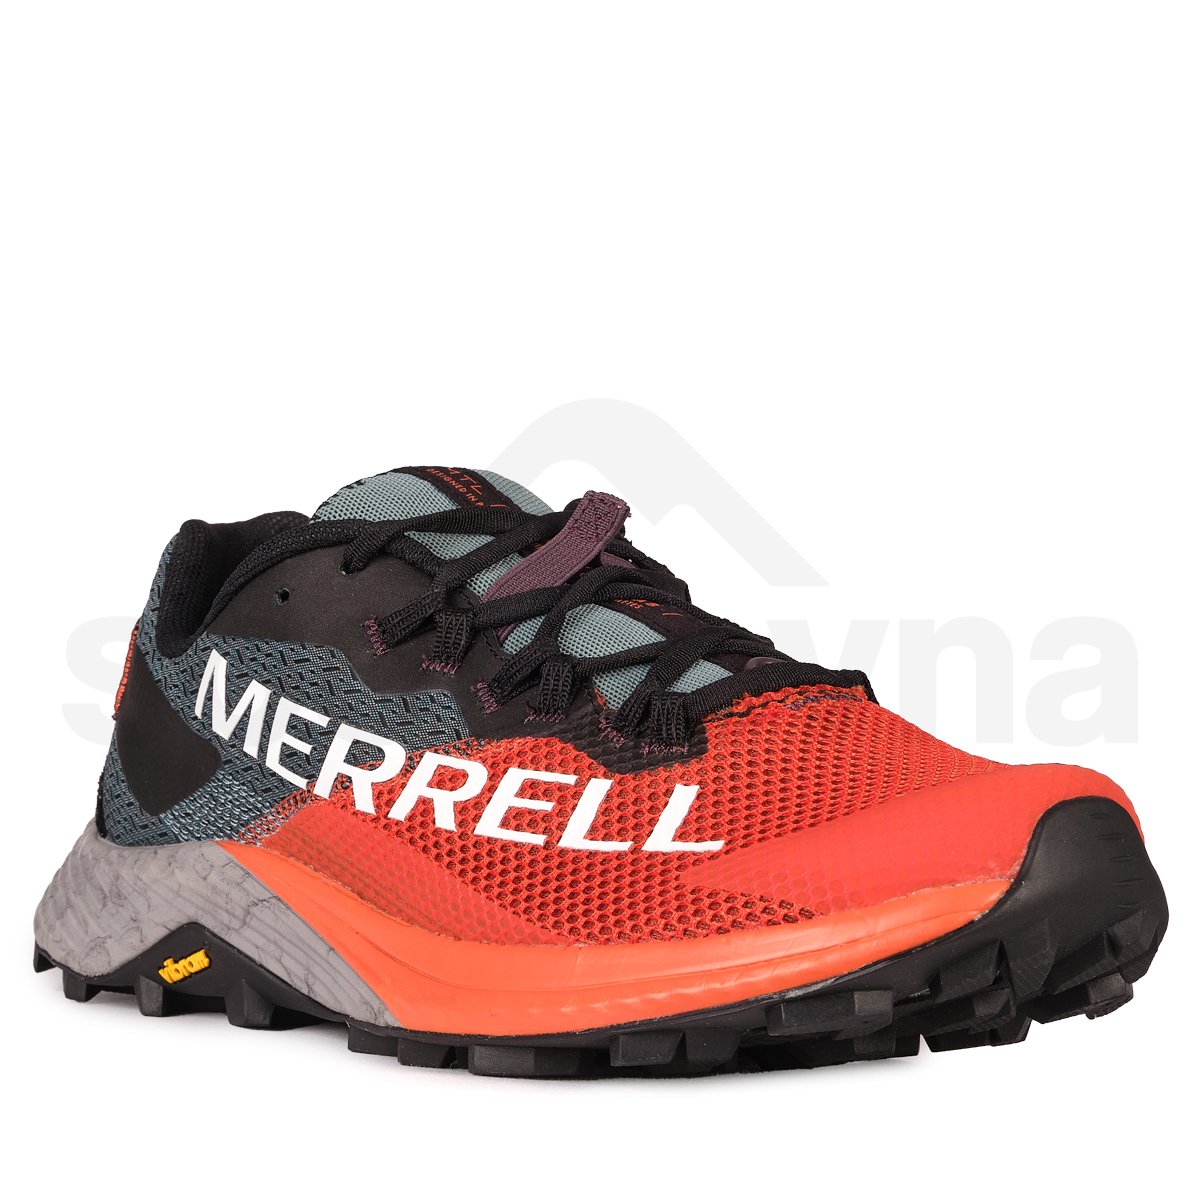 Obuv Merrell MTL Long Sky 2 M - oranžová/černá